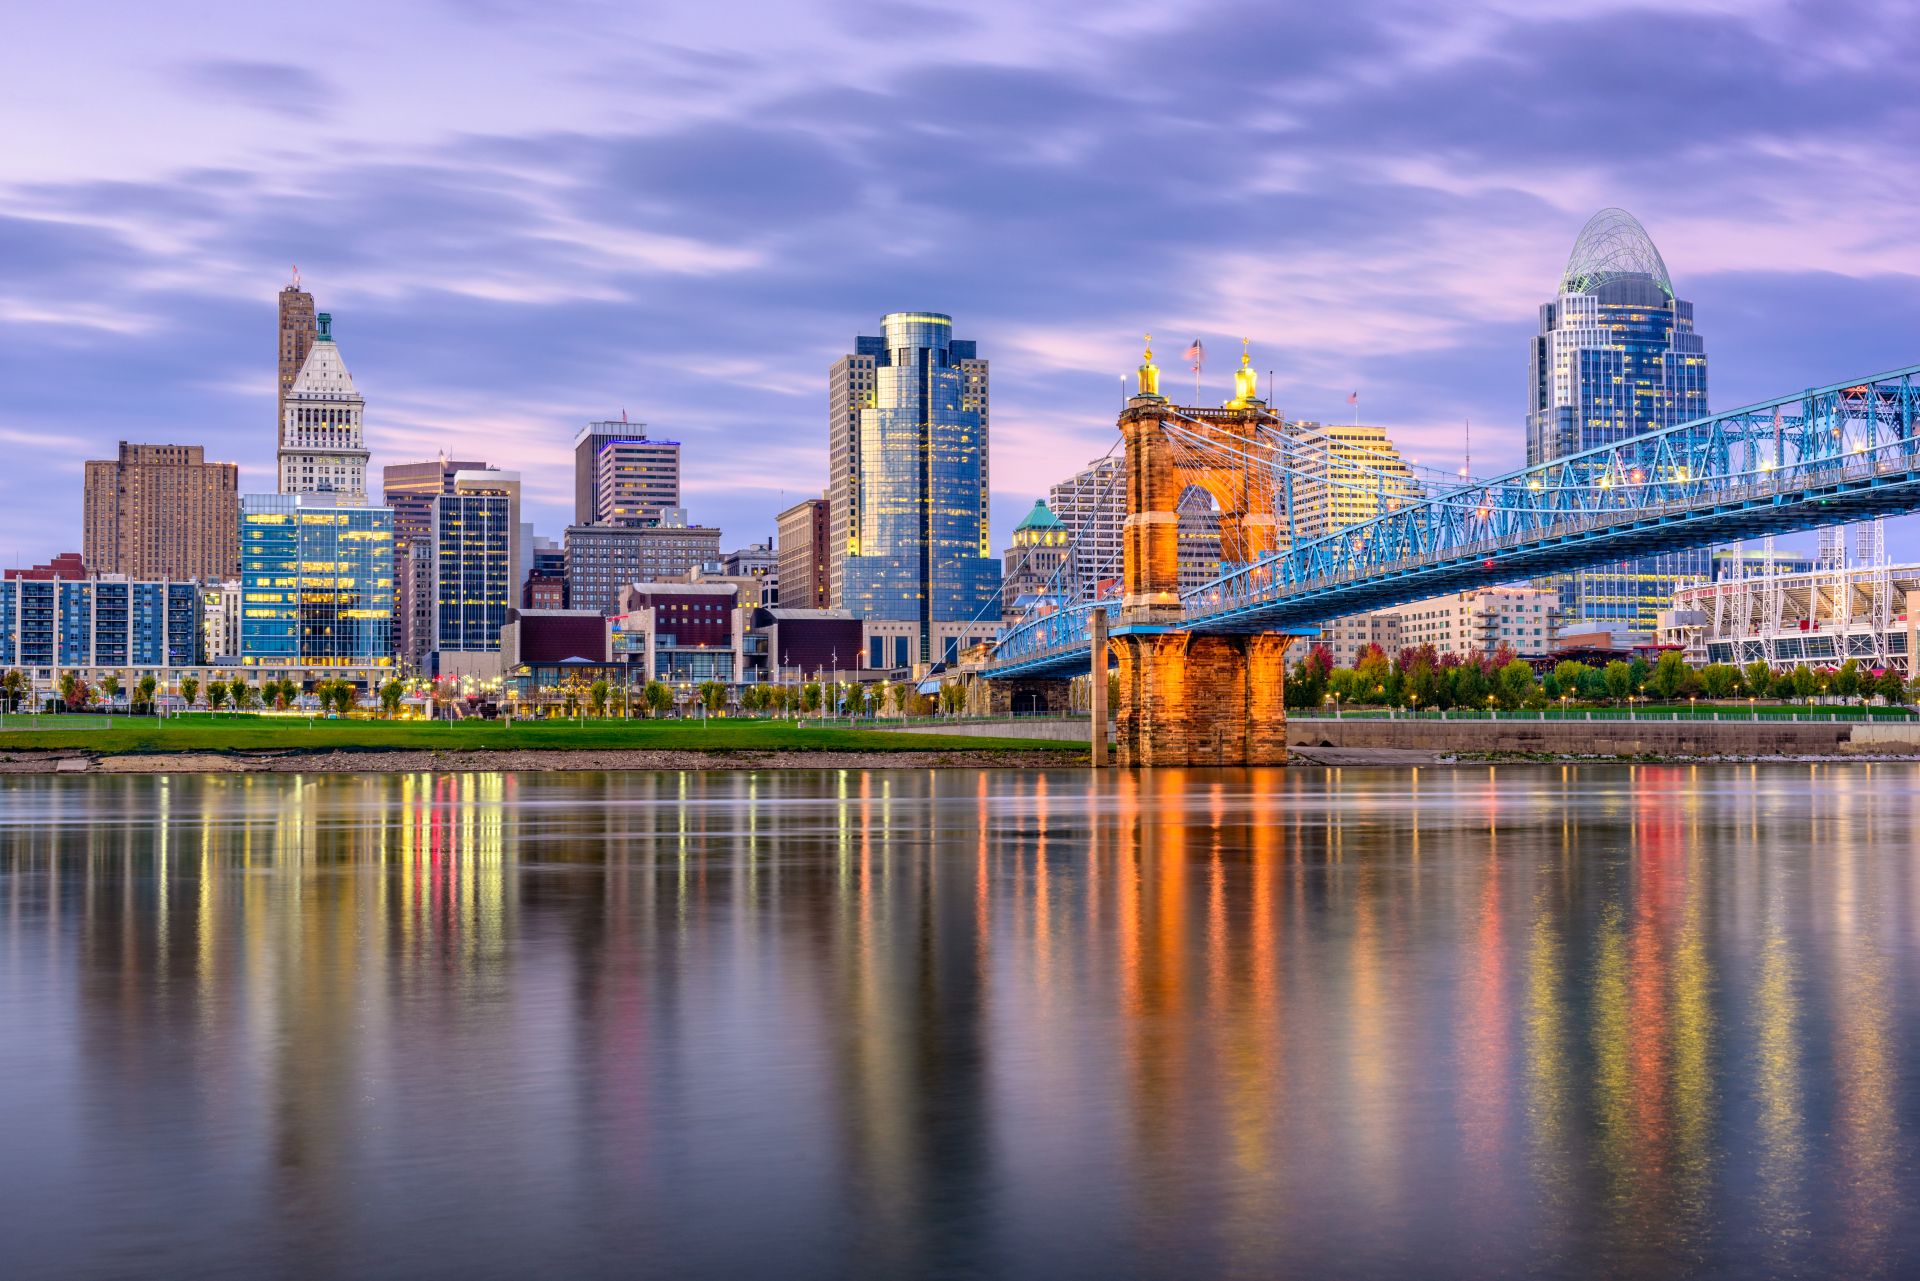 Centro de Cincinnati, Ohio, EE.UU. y puente sobre el río al atardecer.